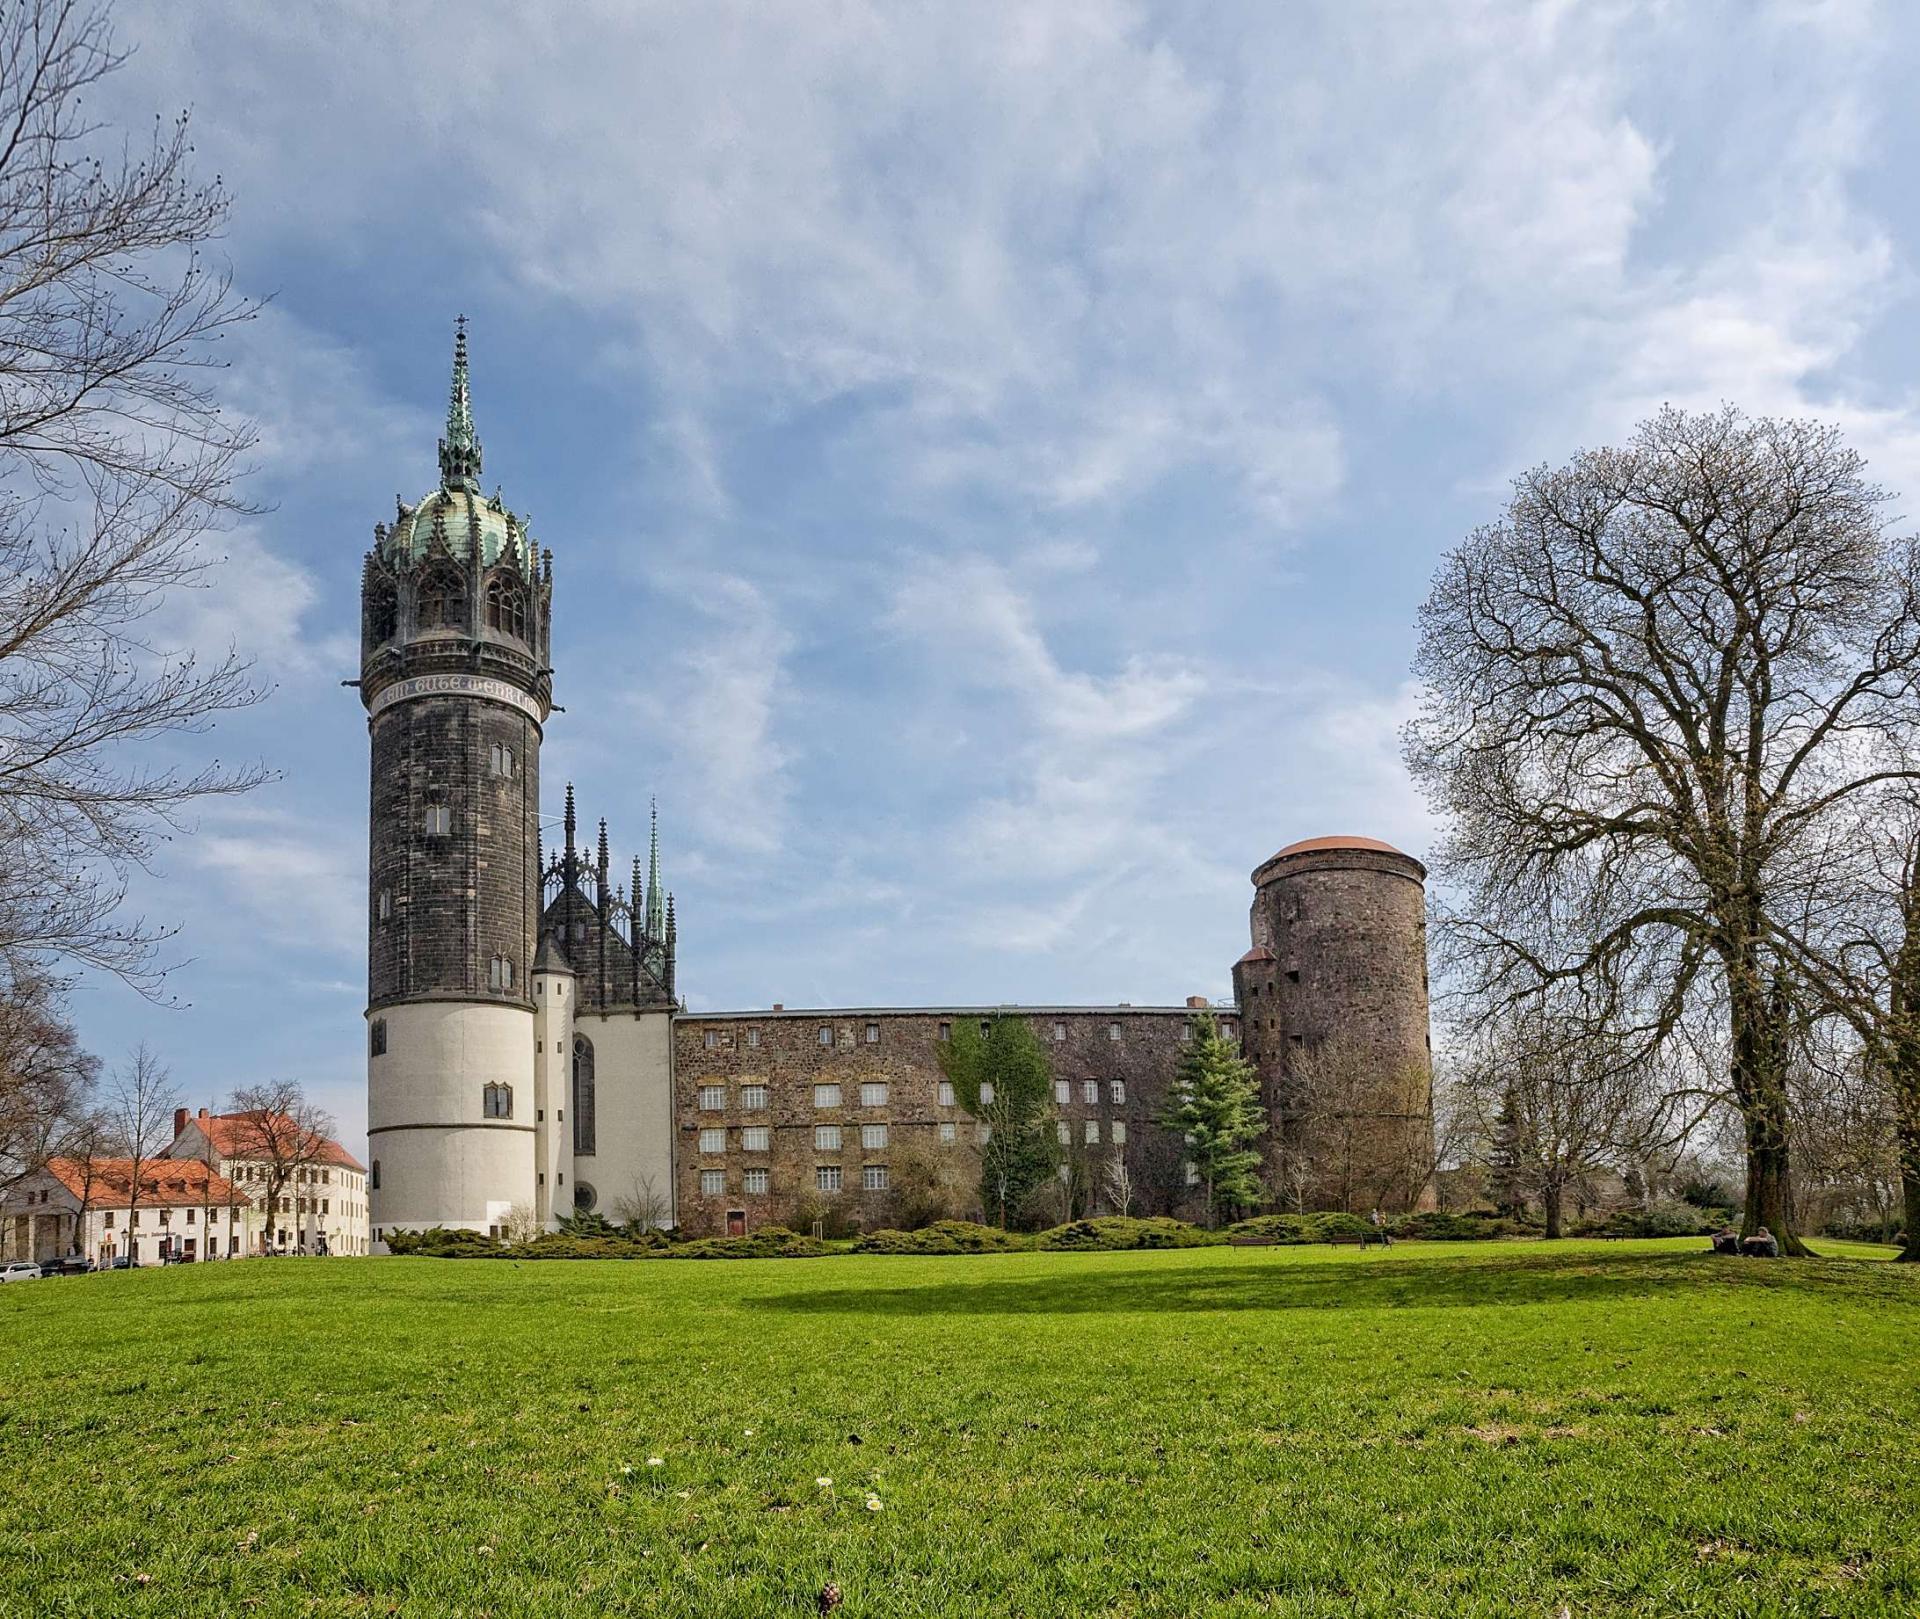 Schloss Wittenberg